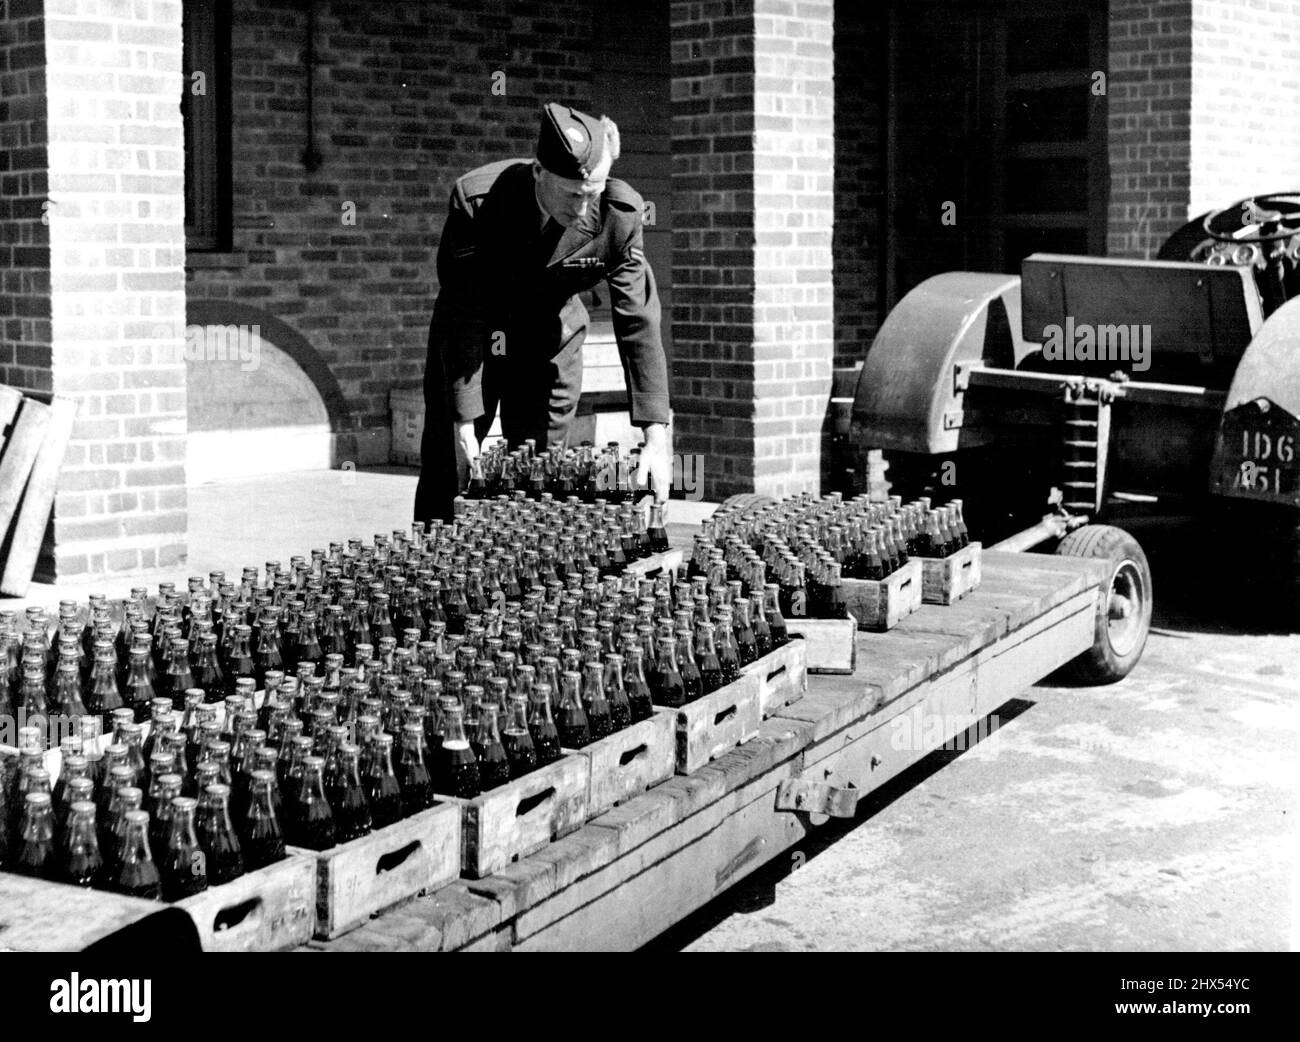 Little Canada -- la Royal Canadian Air Force en Angleterre. L'ARC en Angleterre - l'uniforme est plutôt comme la R.A.F., ainsi que le chariot à bombe -- mais la charge de bouteilles de coke montre qu'il est trans-Atlantique. Vu à N. Luffenham. Rutland, Angleterre. 1 juin 1952. (Photo du Bureau central d'information) Banque D'Images